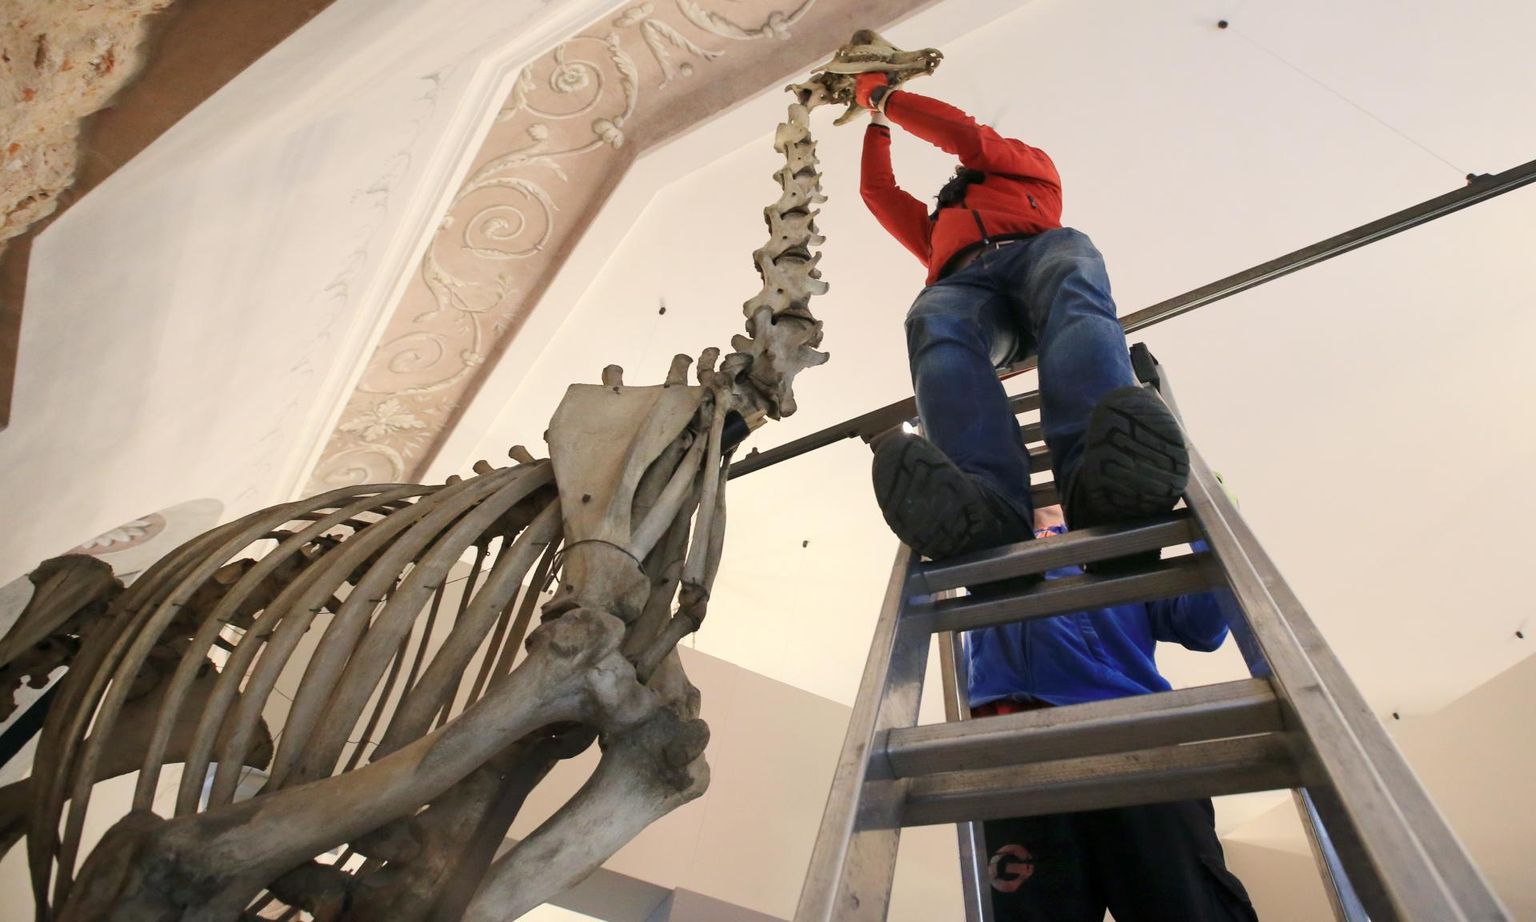 KLG Eesti töötaja Roman Bronzov ronis reedel Tartu ülikooli muuseumi lae alla, et kaelkirjakule kolimise käigus ära võetud kolp tagasi panna.
 